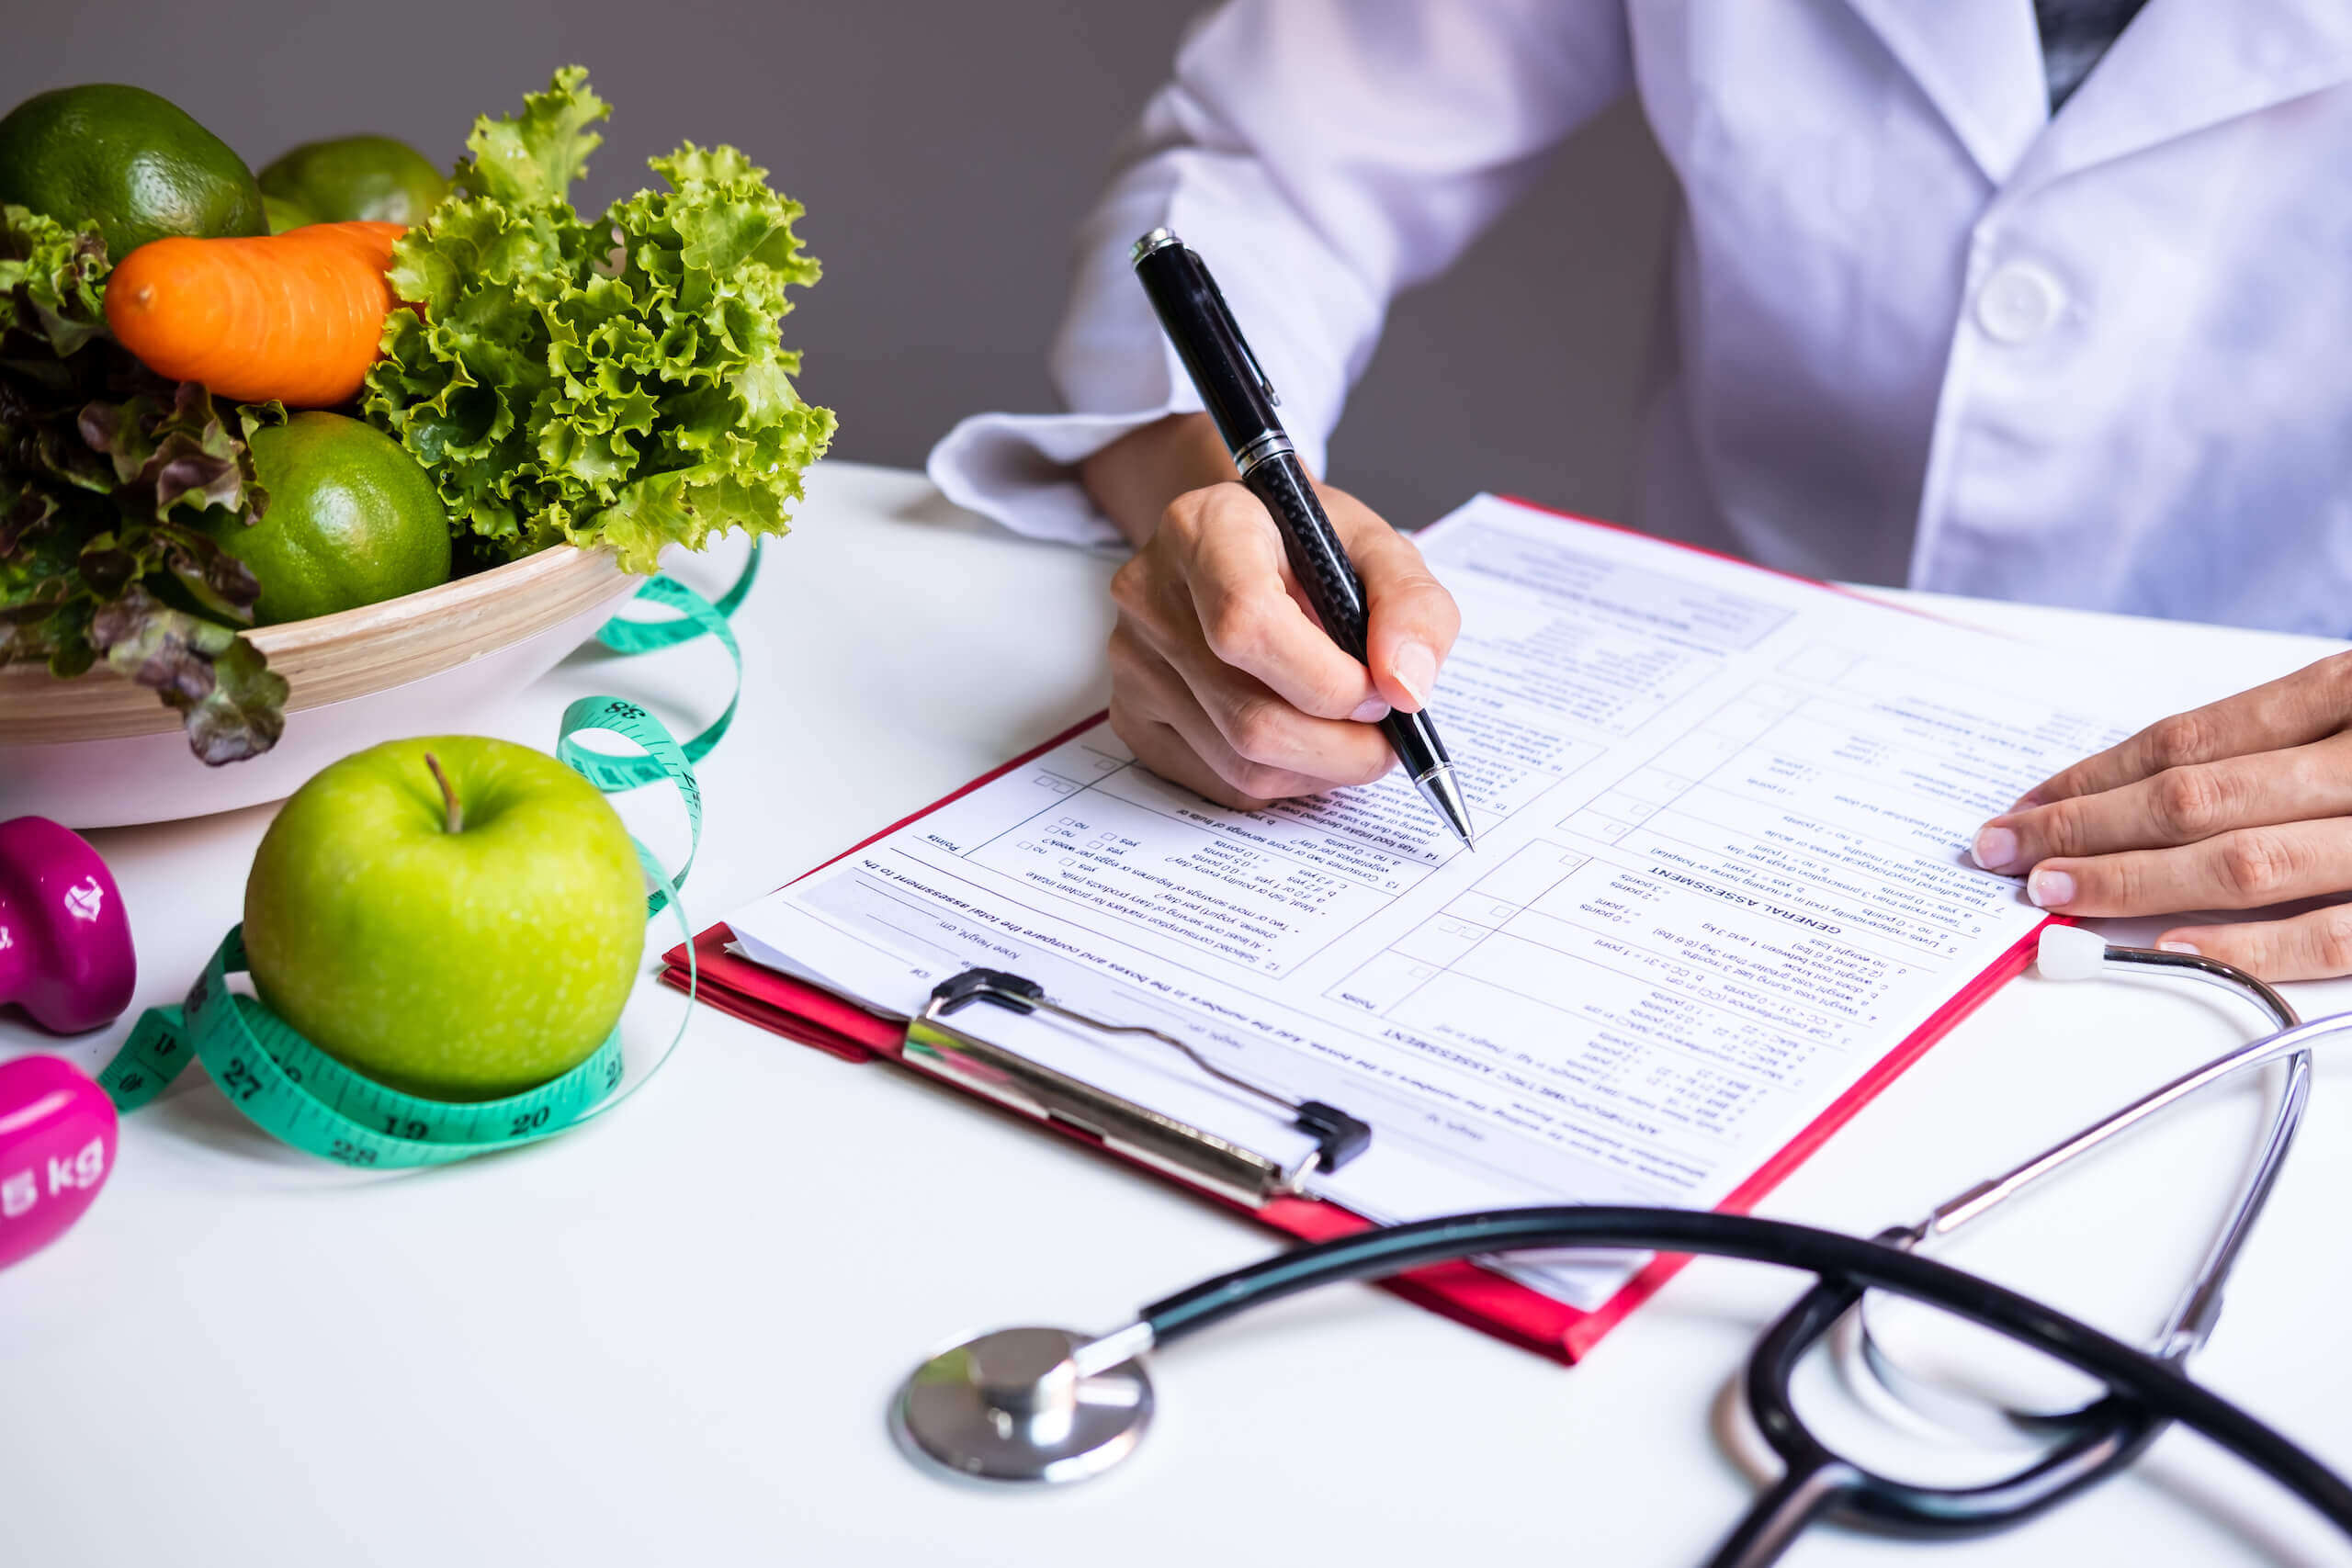 Ärztin beim ausfüllen eines Formulares neben einer Schüssel mit frischem Gemüse und Obst